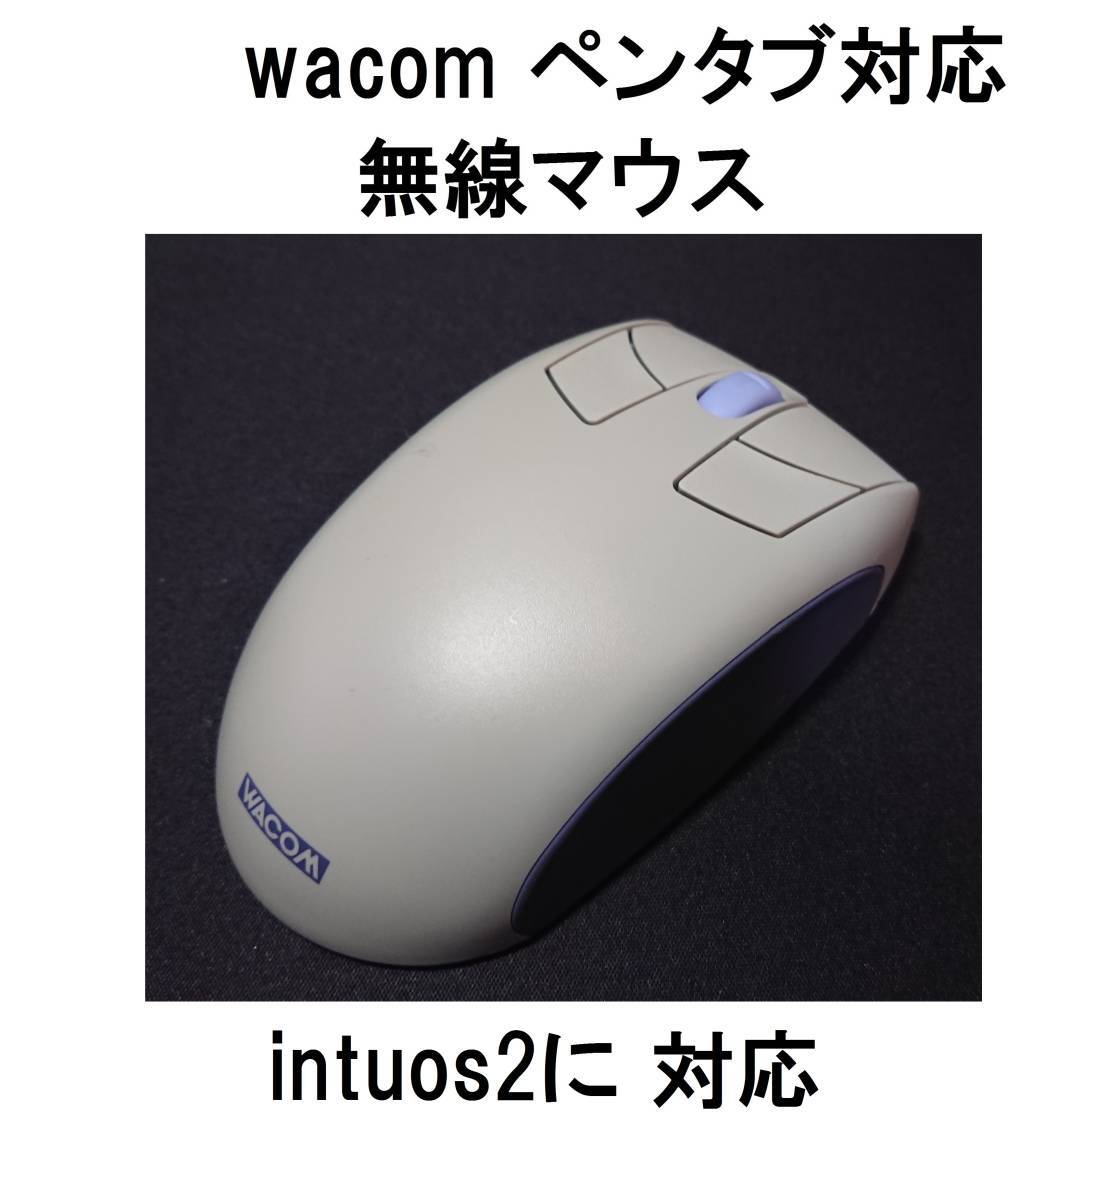 Intuos2 wacom Intos2 intos 2 Intuos 2 Intuos 2 Pentab Wacom Tablet XC-400 беспроводная беспроводная мышь 4D 4D